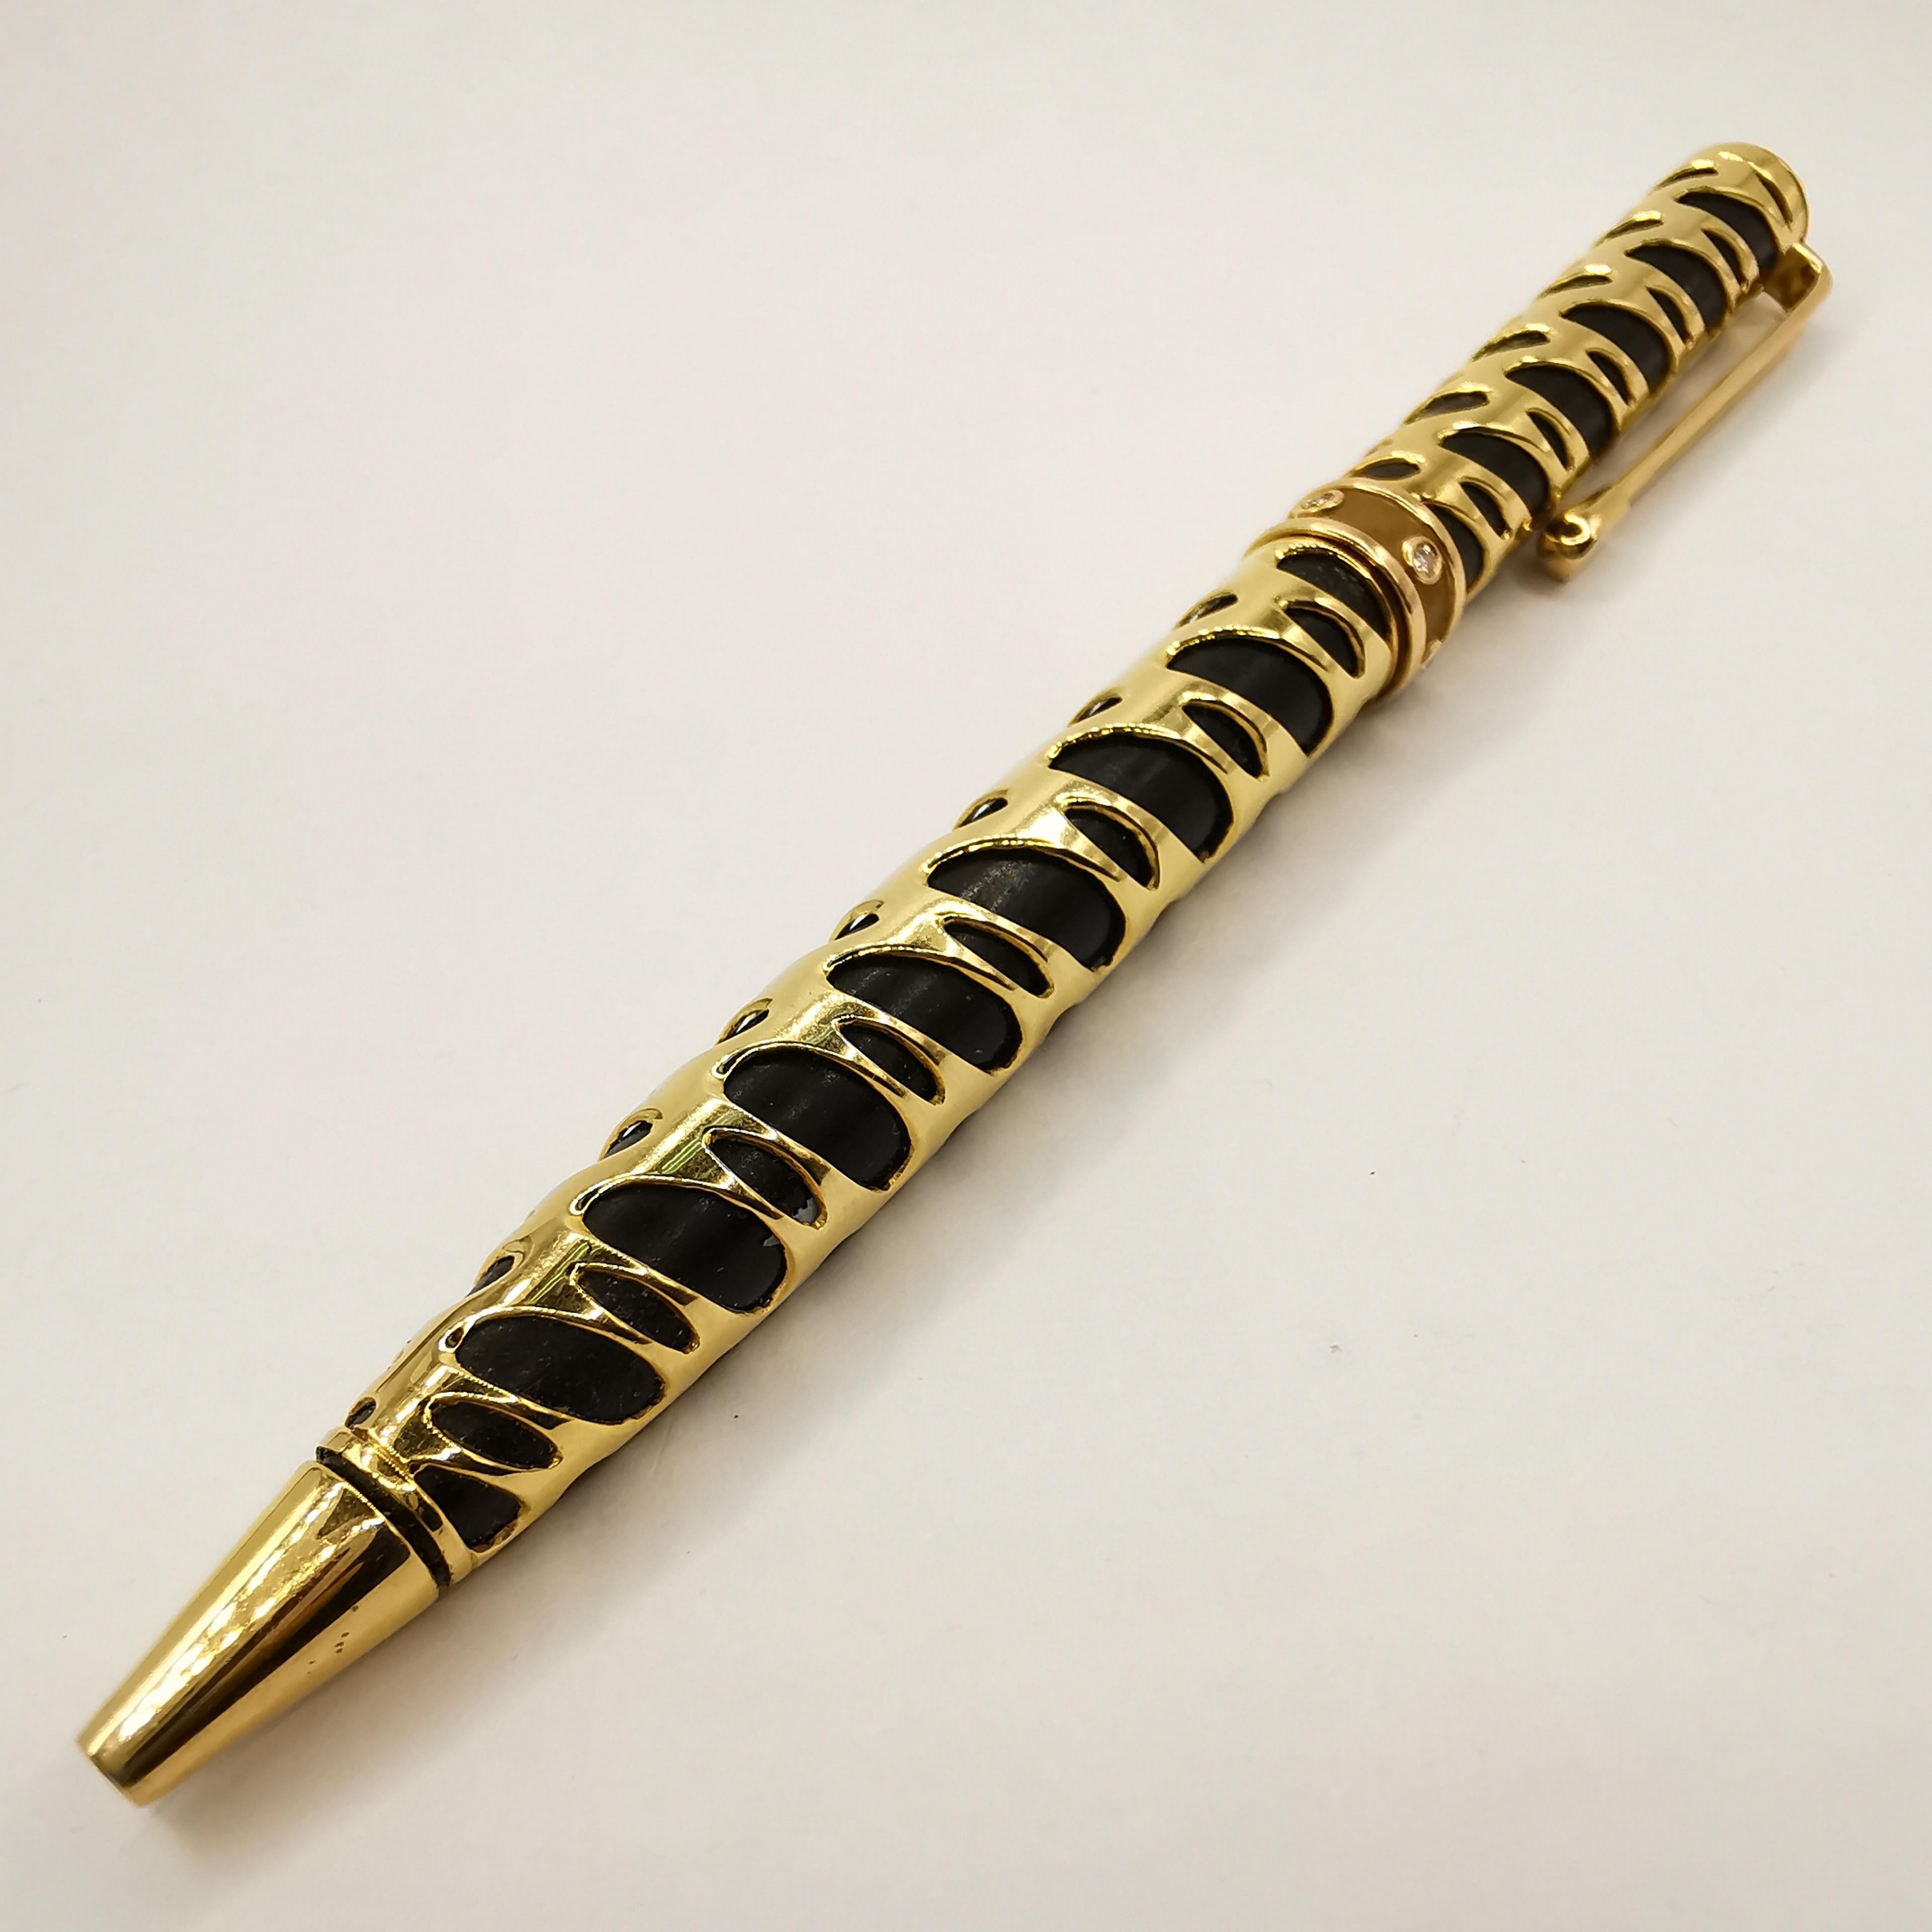 Découvrez le luxe de l'écriture avec ce stylo à bille vintage en diamant noir coloré et en or jaune 18 carats. Fabriqué en or jaune 18 carats, le stylo affiche un poids substantiel de 22,50 grammes, ce qui en fait un ajout précieux et intemporel à